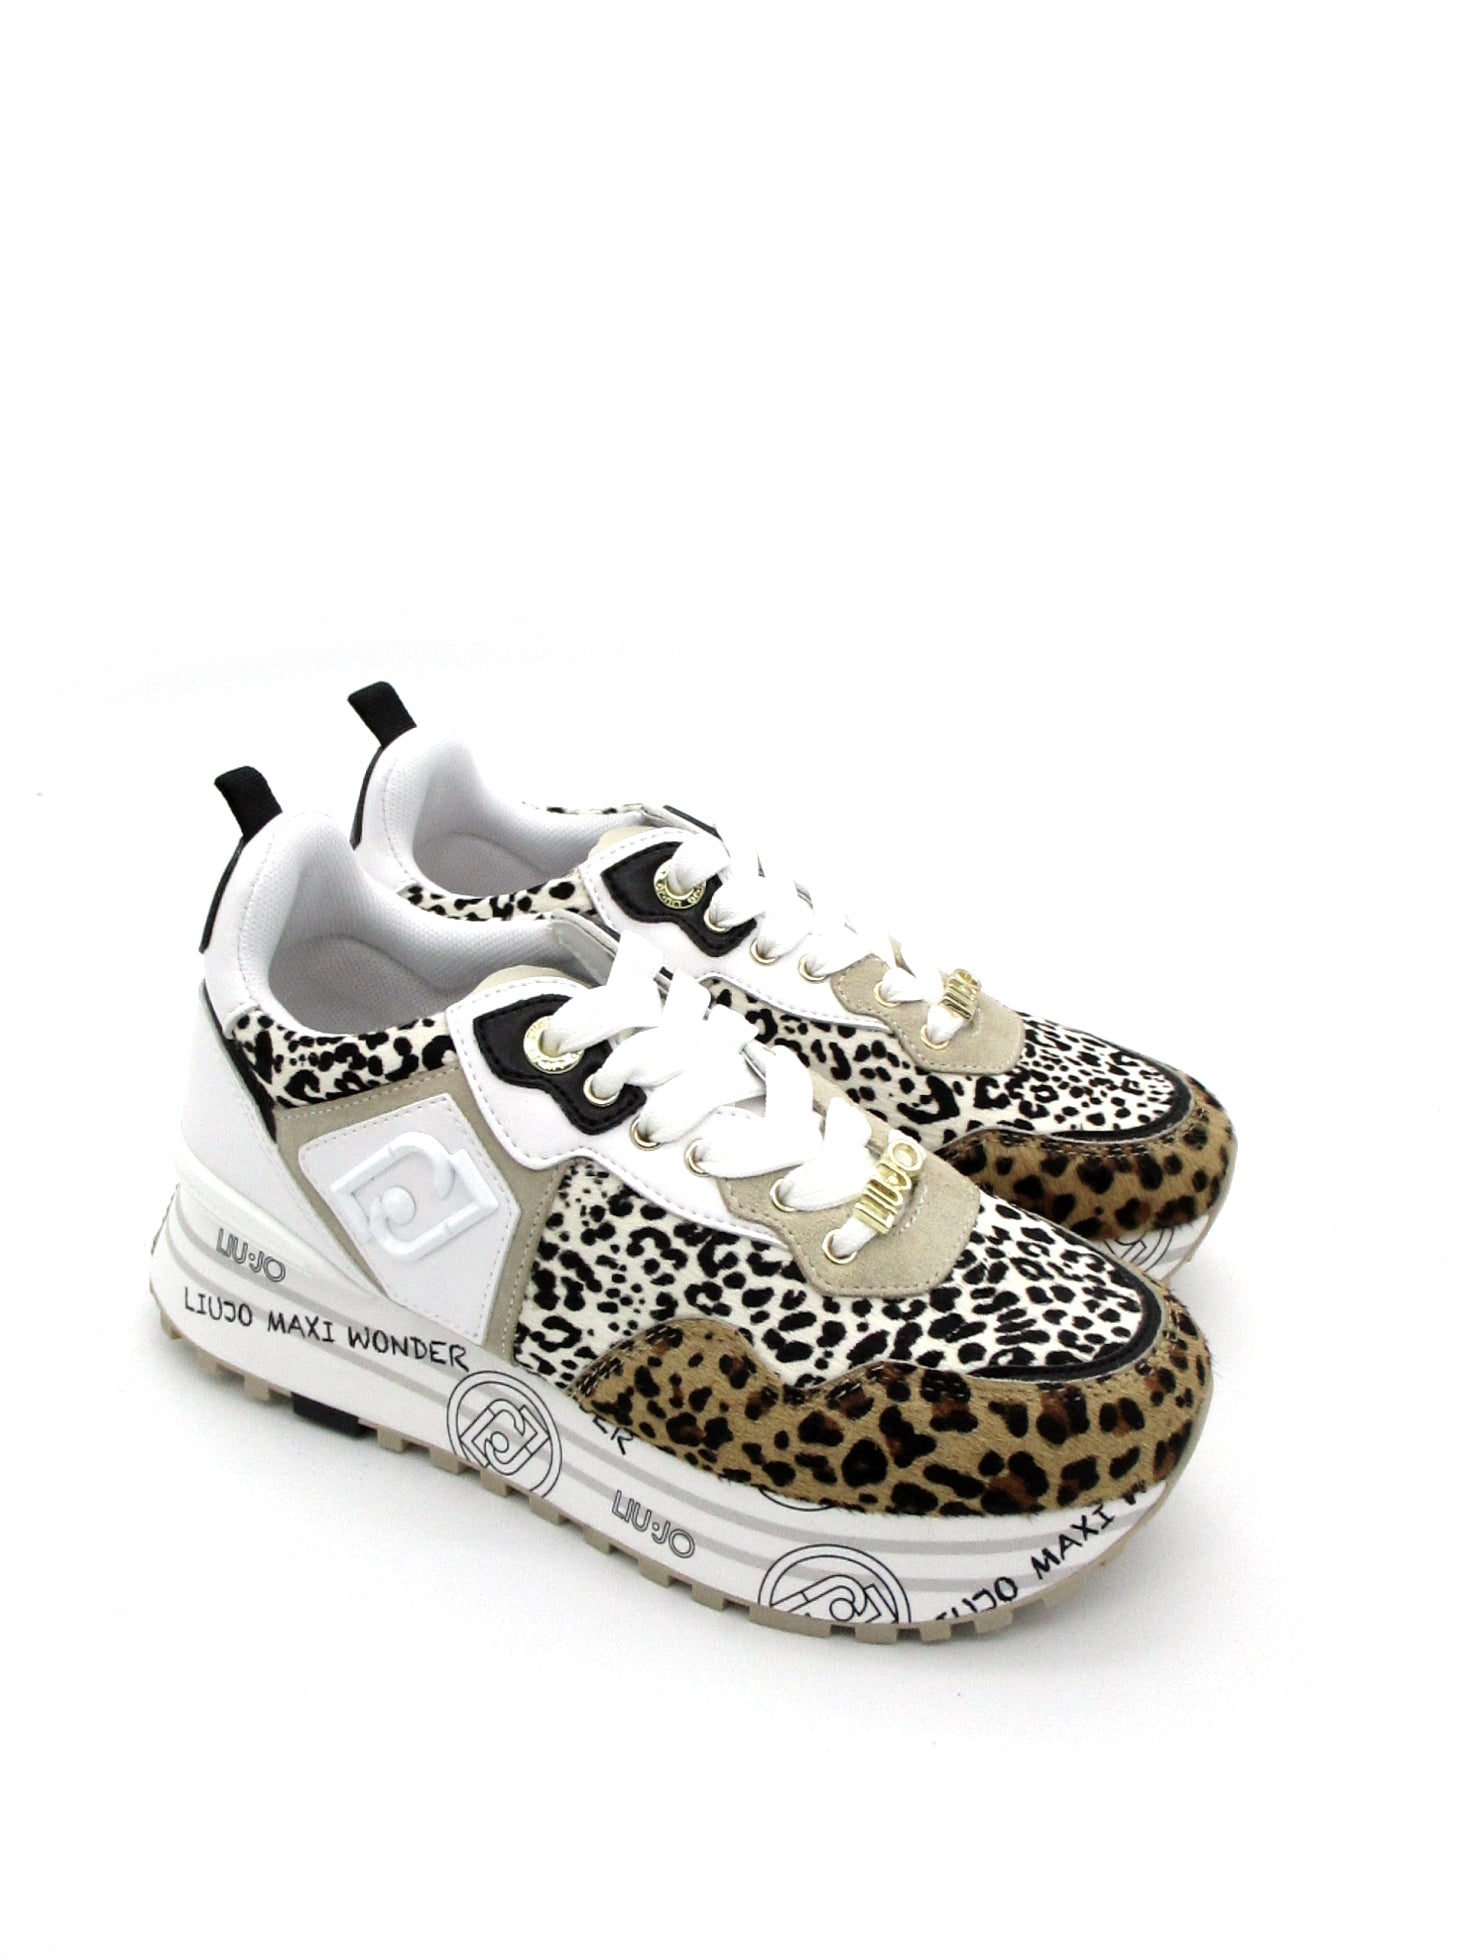 Sneakers LIUJO Pony Leopard - Maxi wonder 01 -